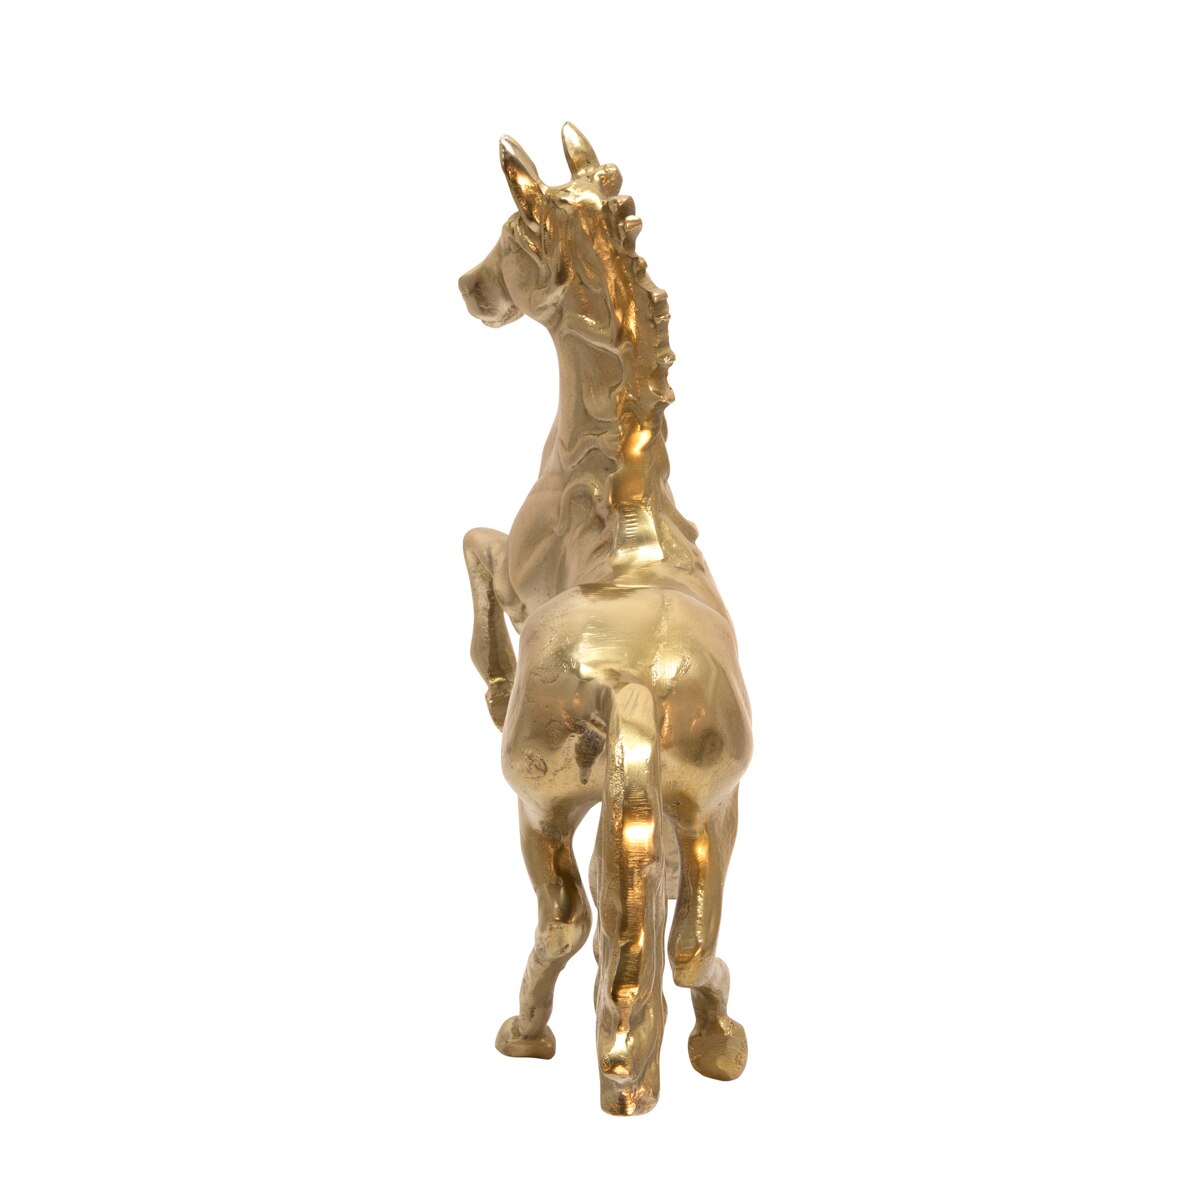 16" Horse Sculpture, Gold